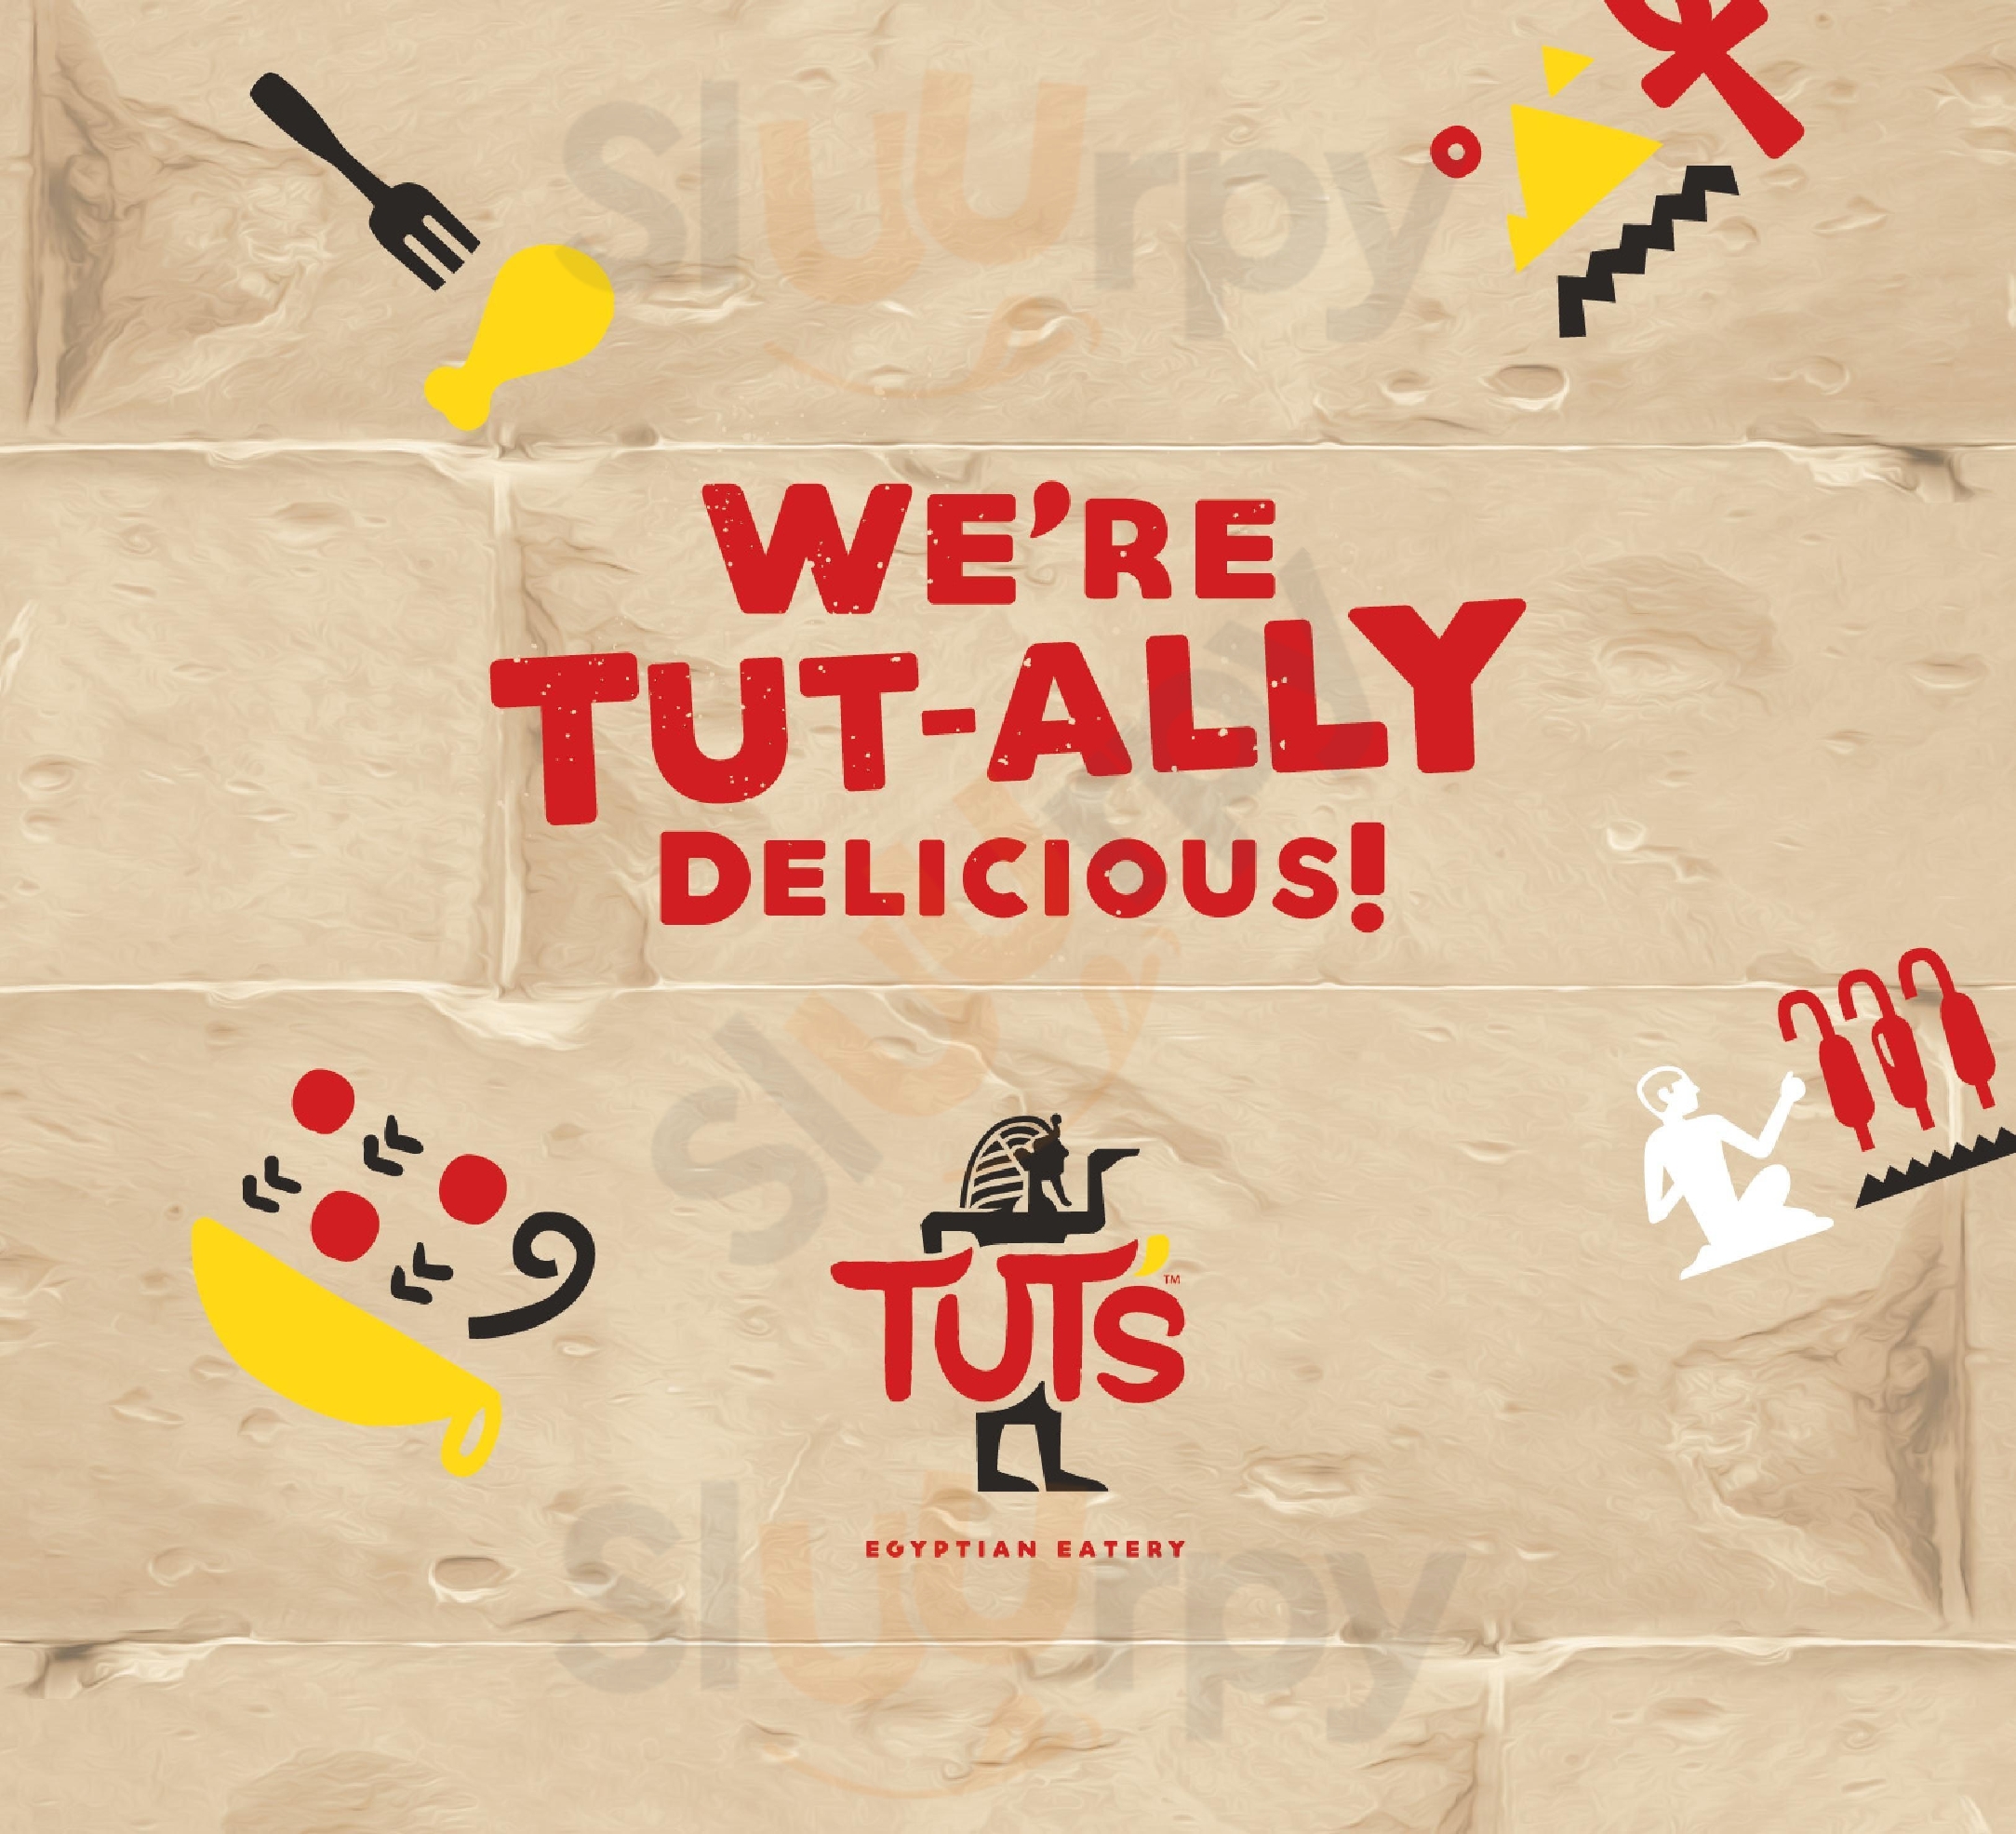 Tut's Egyptian Eatery Petaling Jaya Menu - 1